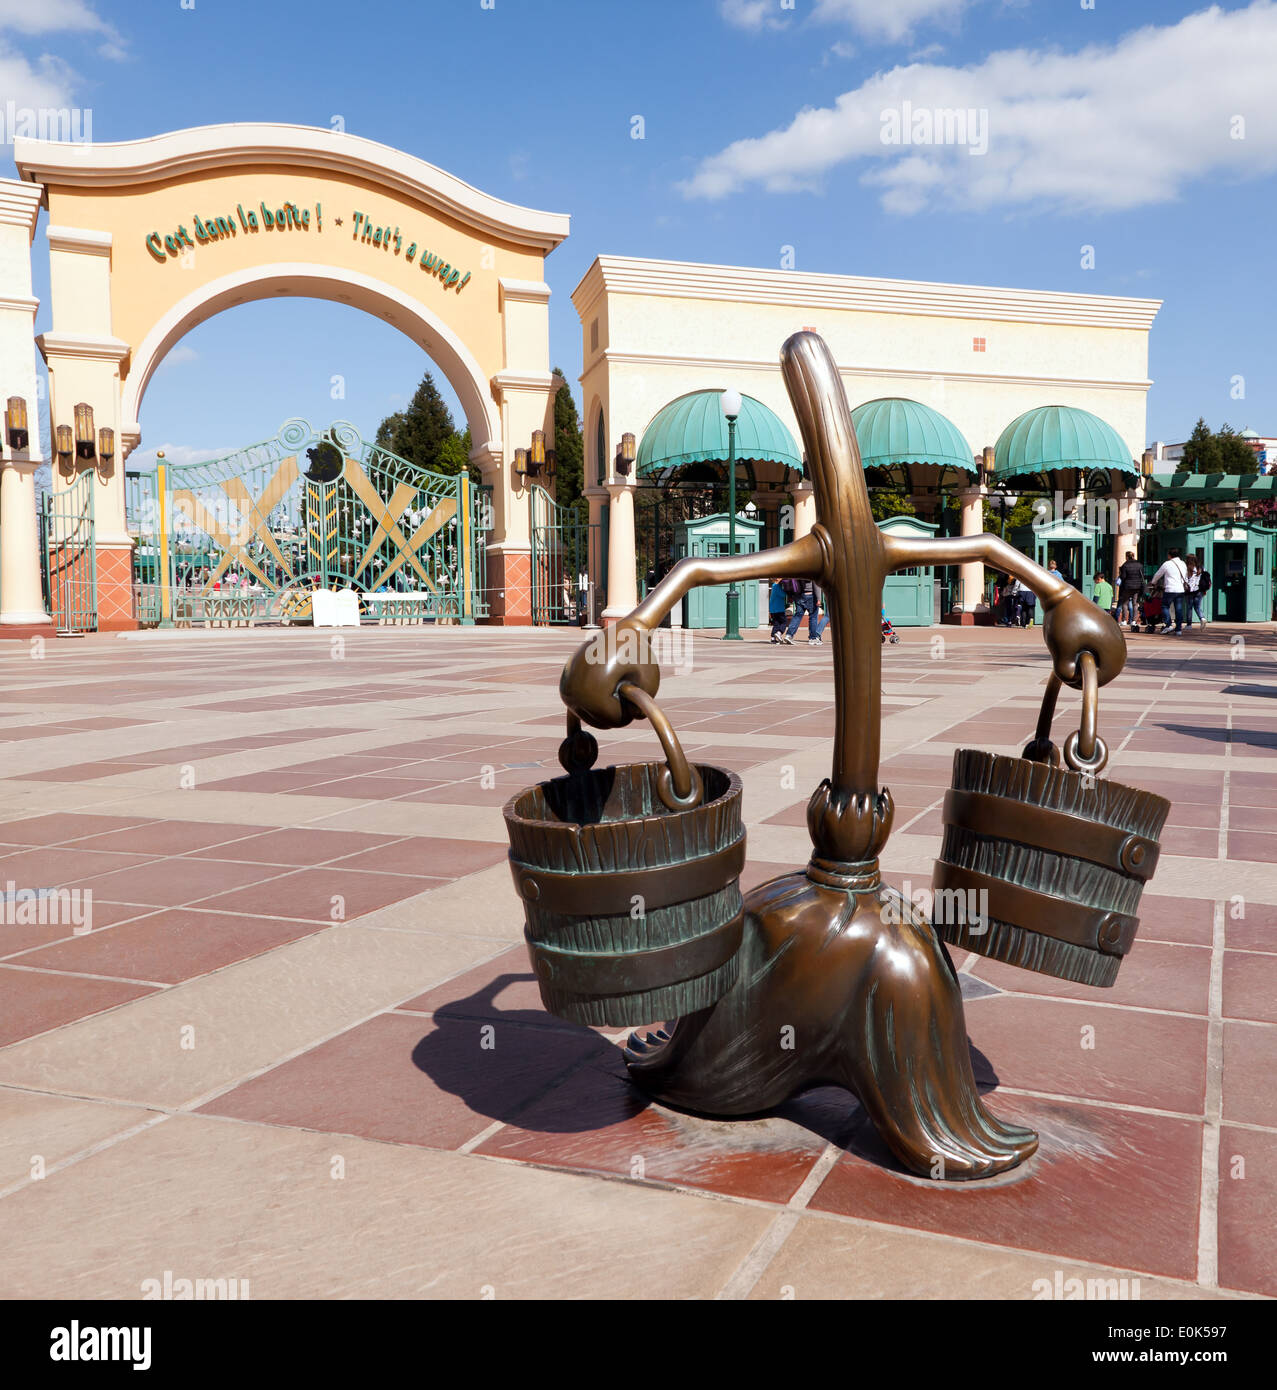 Una escultura de bronce de una de las escobas mágicas, desde 'El aprendiz de brujo" segmento de Disney's Fantasia Film Foto de stock